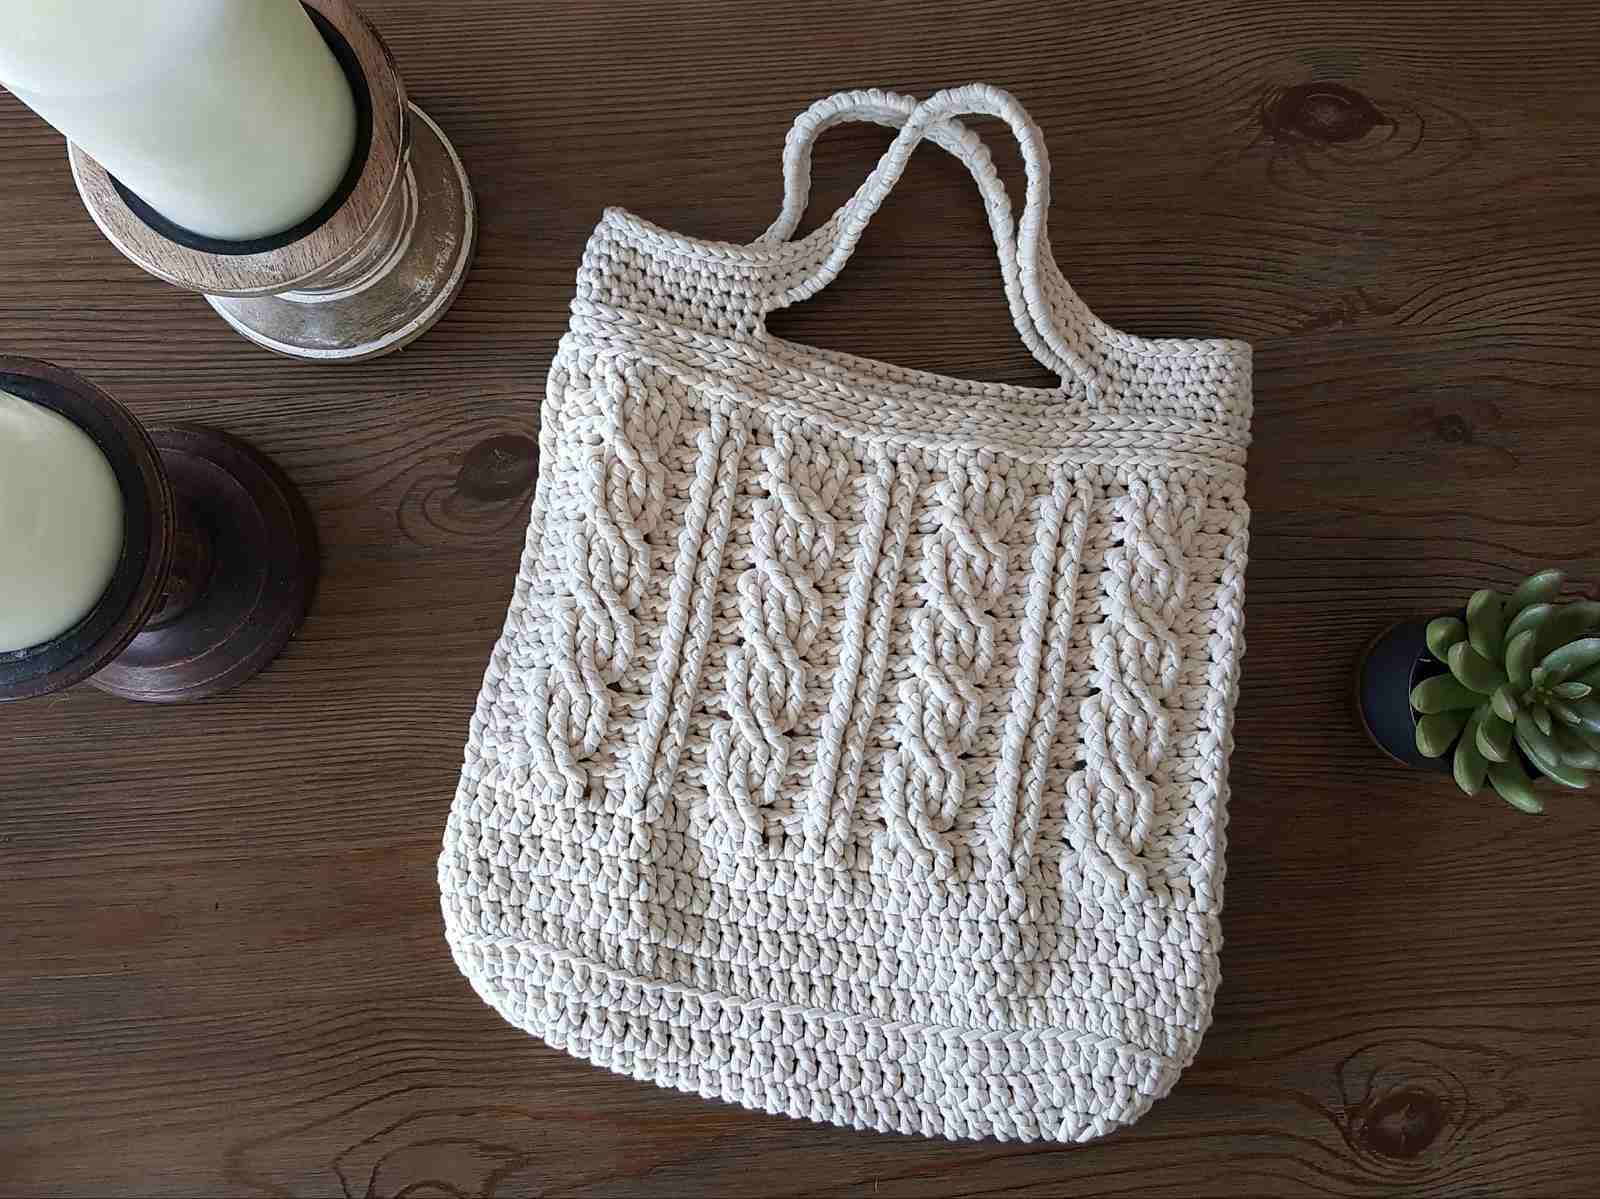 Crochet Purse Patterns 8 Creative Crochet Bag Patterns